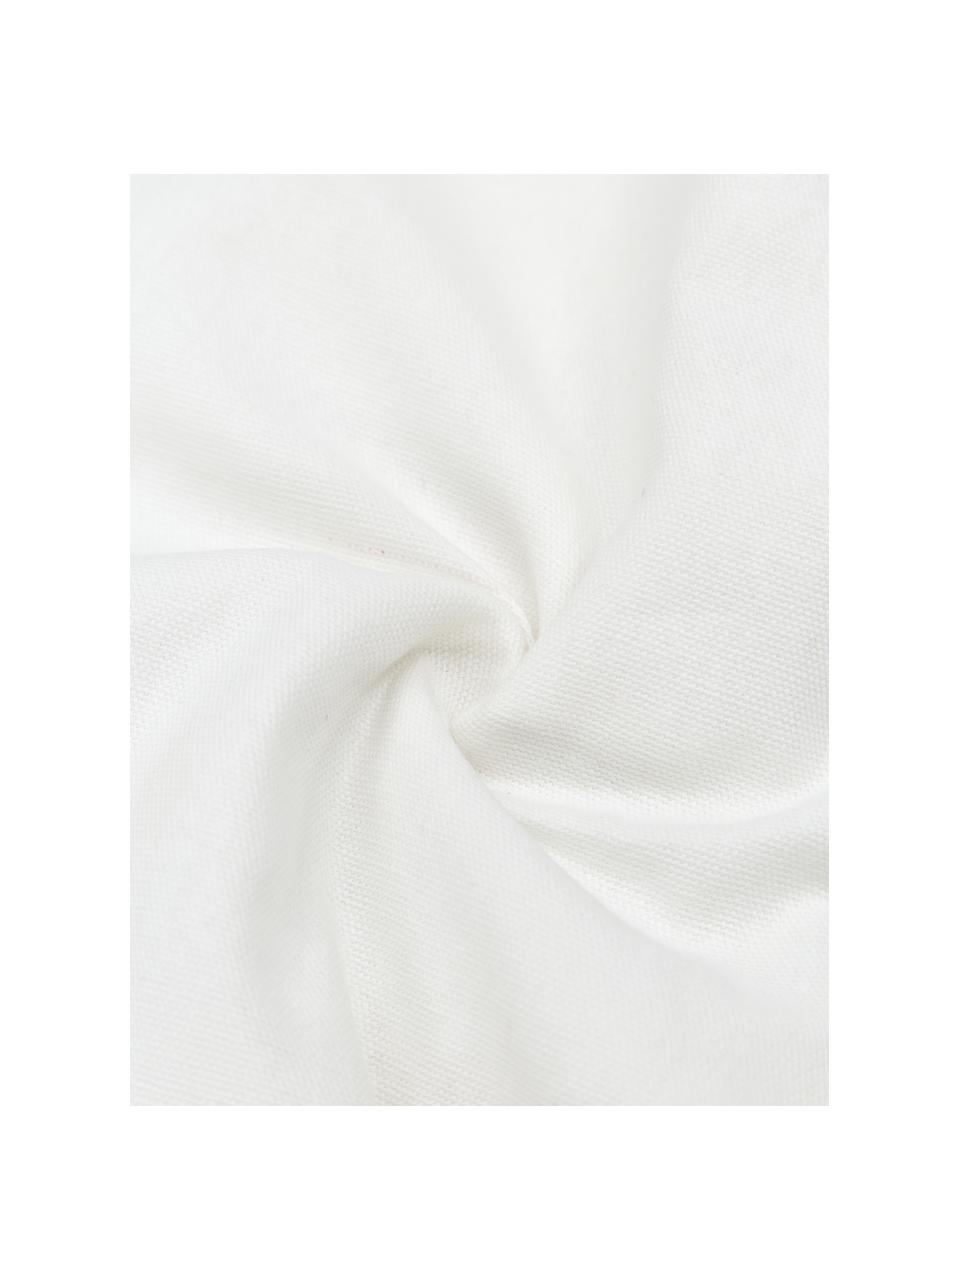 Housse de coussin rectangulaire brodée en coton Terra Nova, 100 % coton, Blanc, beige, noir, larg. 40 x long. 60 cm